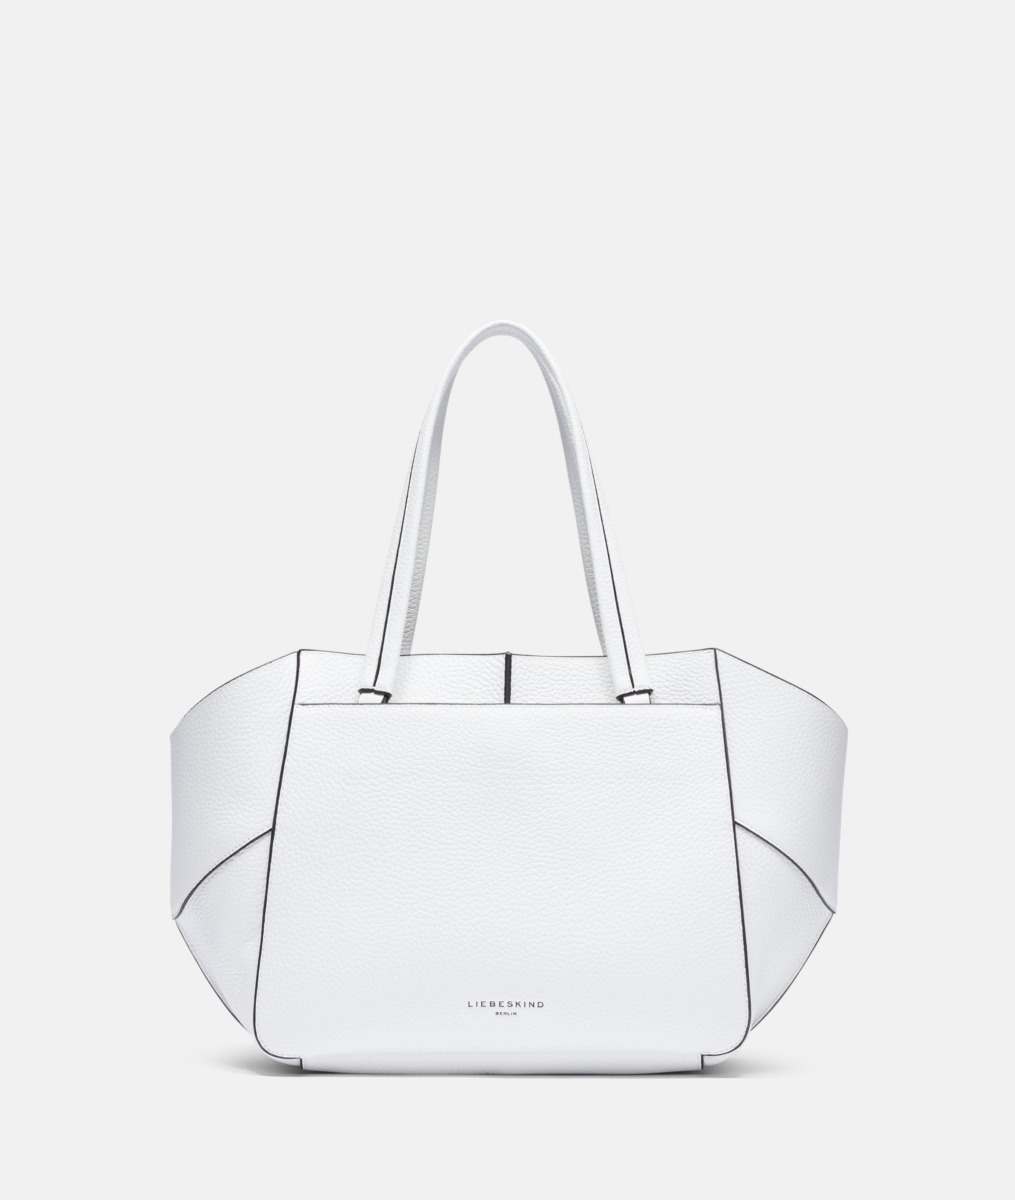 Liebeskind - Ladies White Shopper Bag GOOFASH